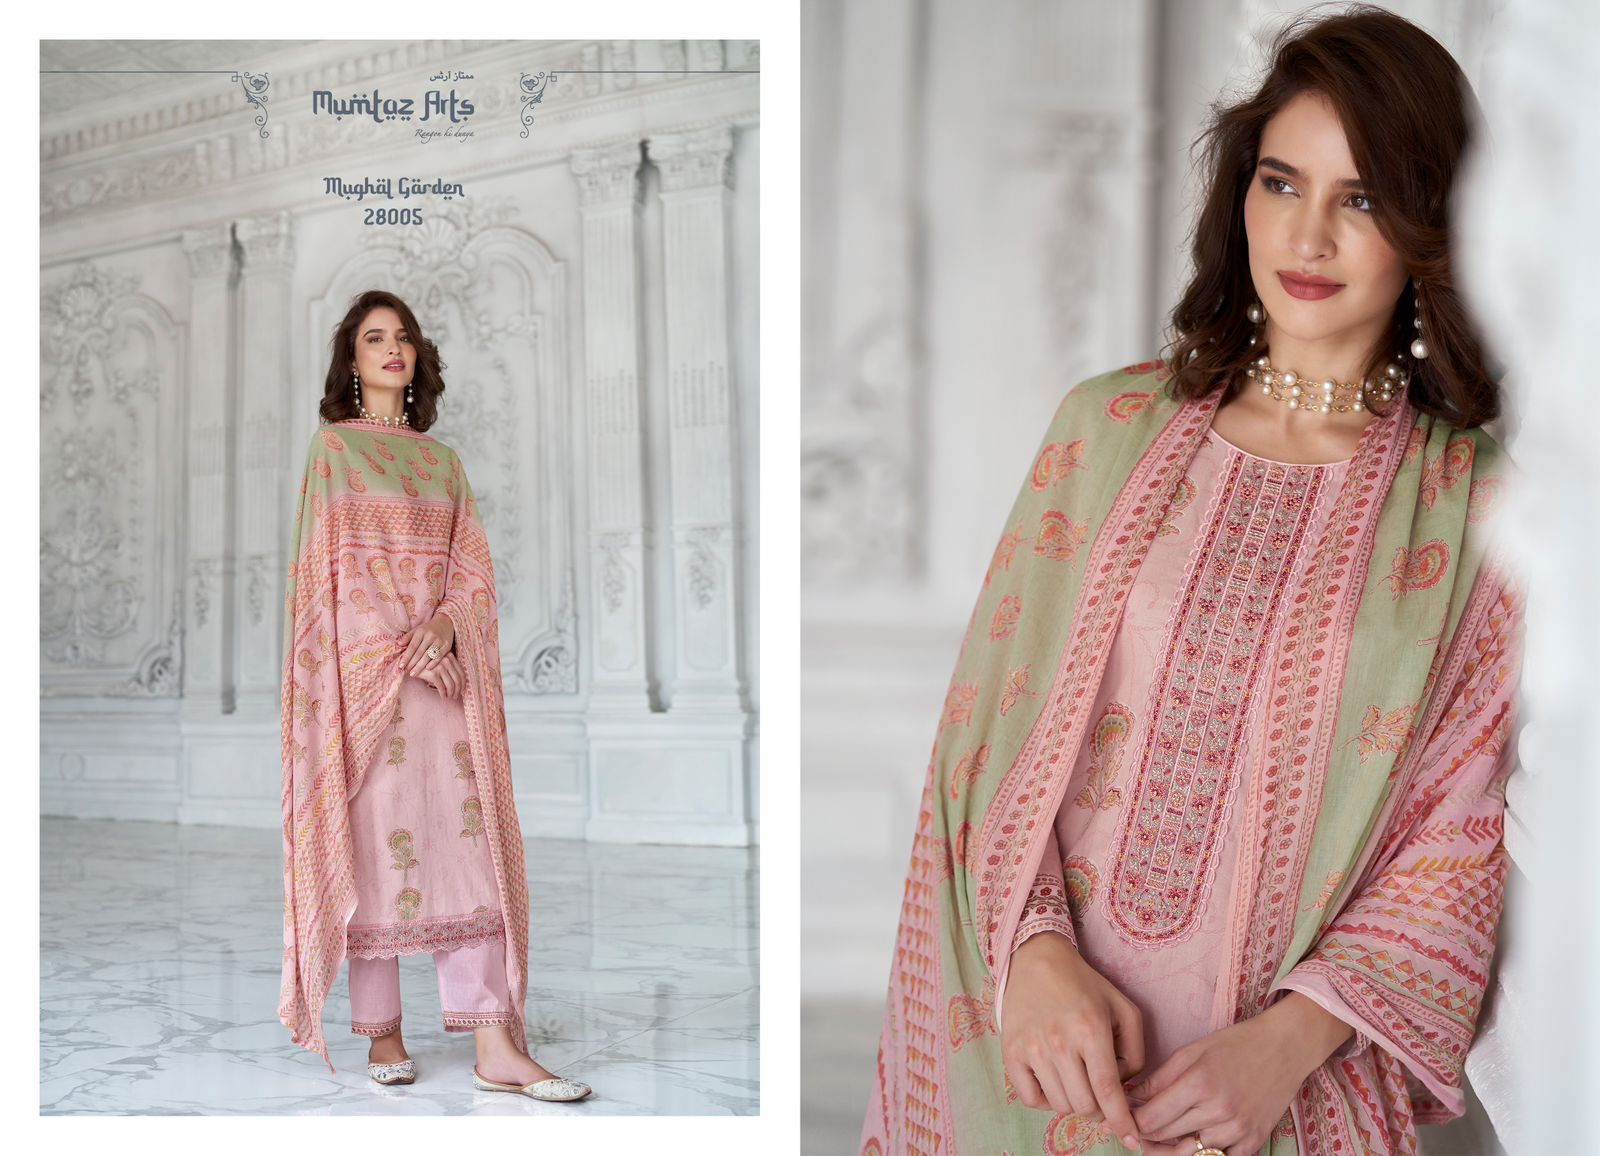 mumtaz art mughal garden camric decent embroidery look salwar suit catalog